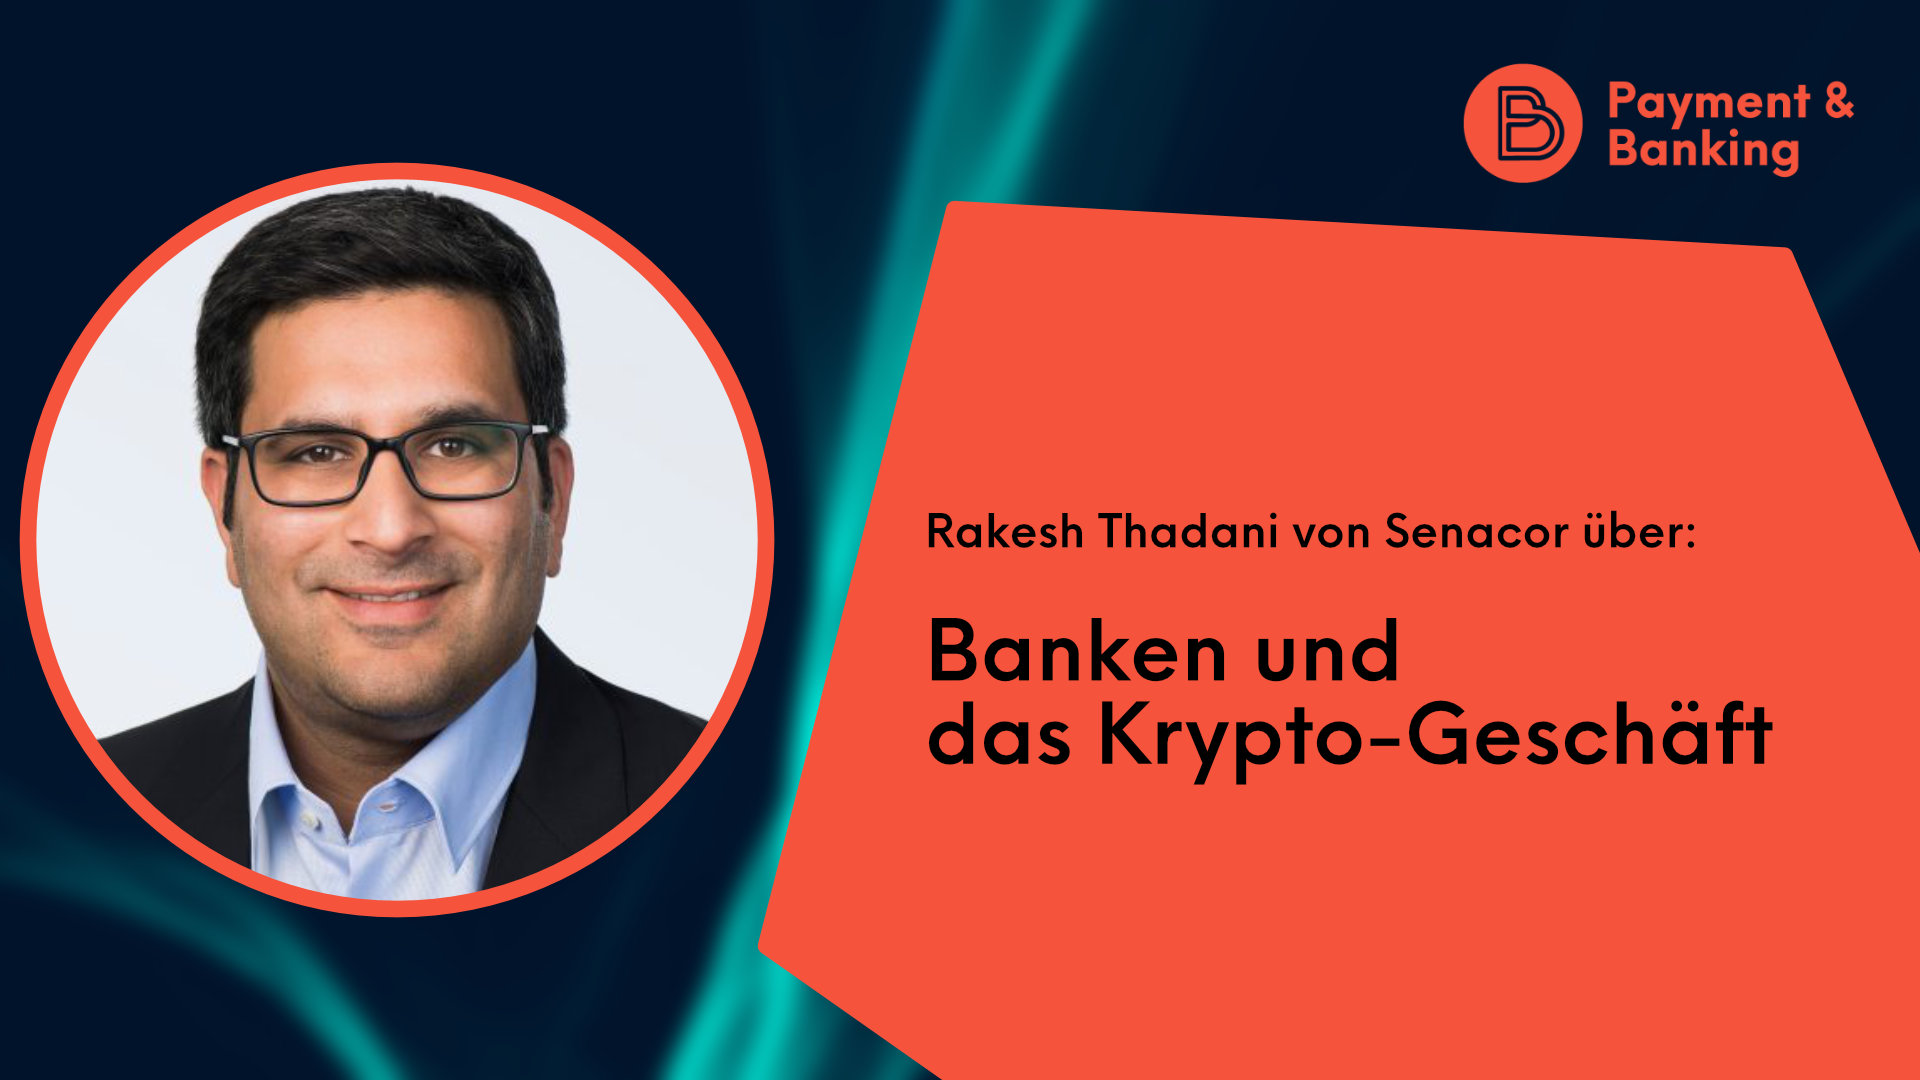 Rakesh-Thadani-von-Senacor-ueber-Banken-und-das-Krypto-Geschaeft